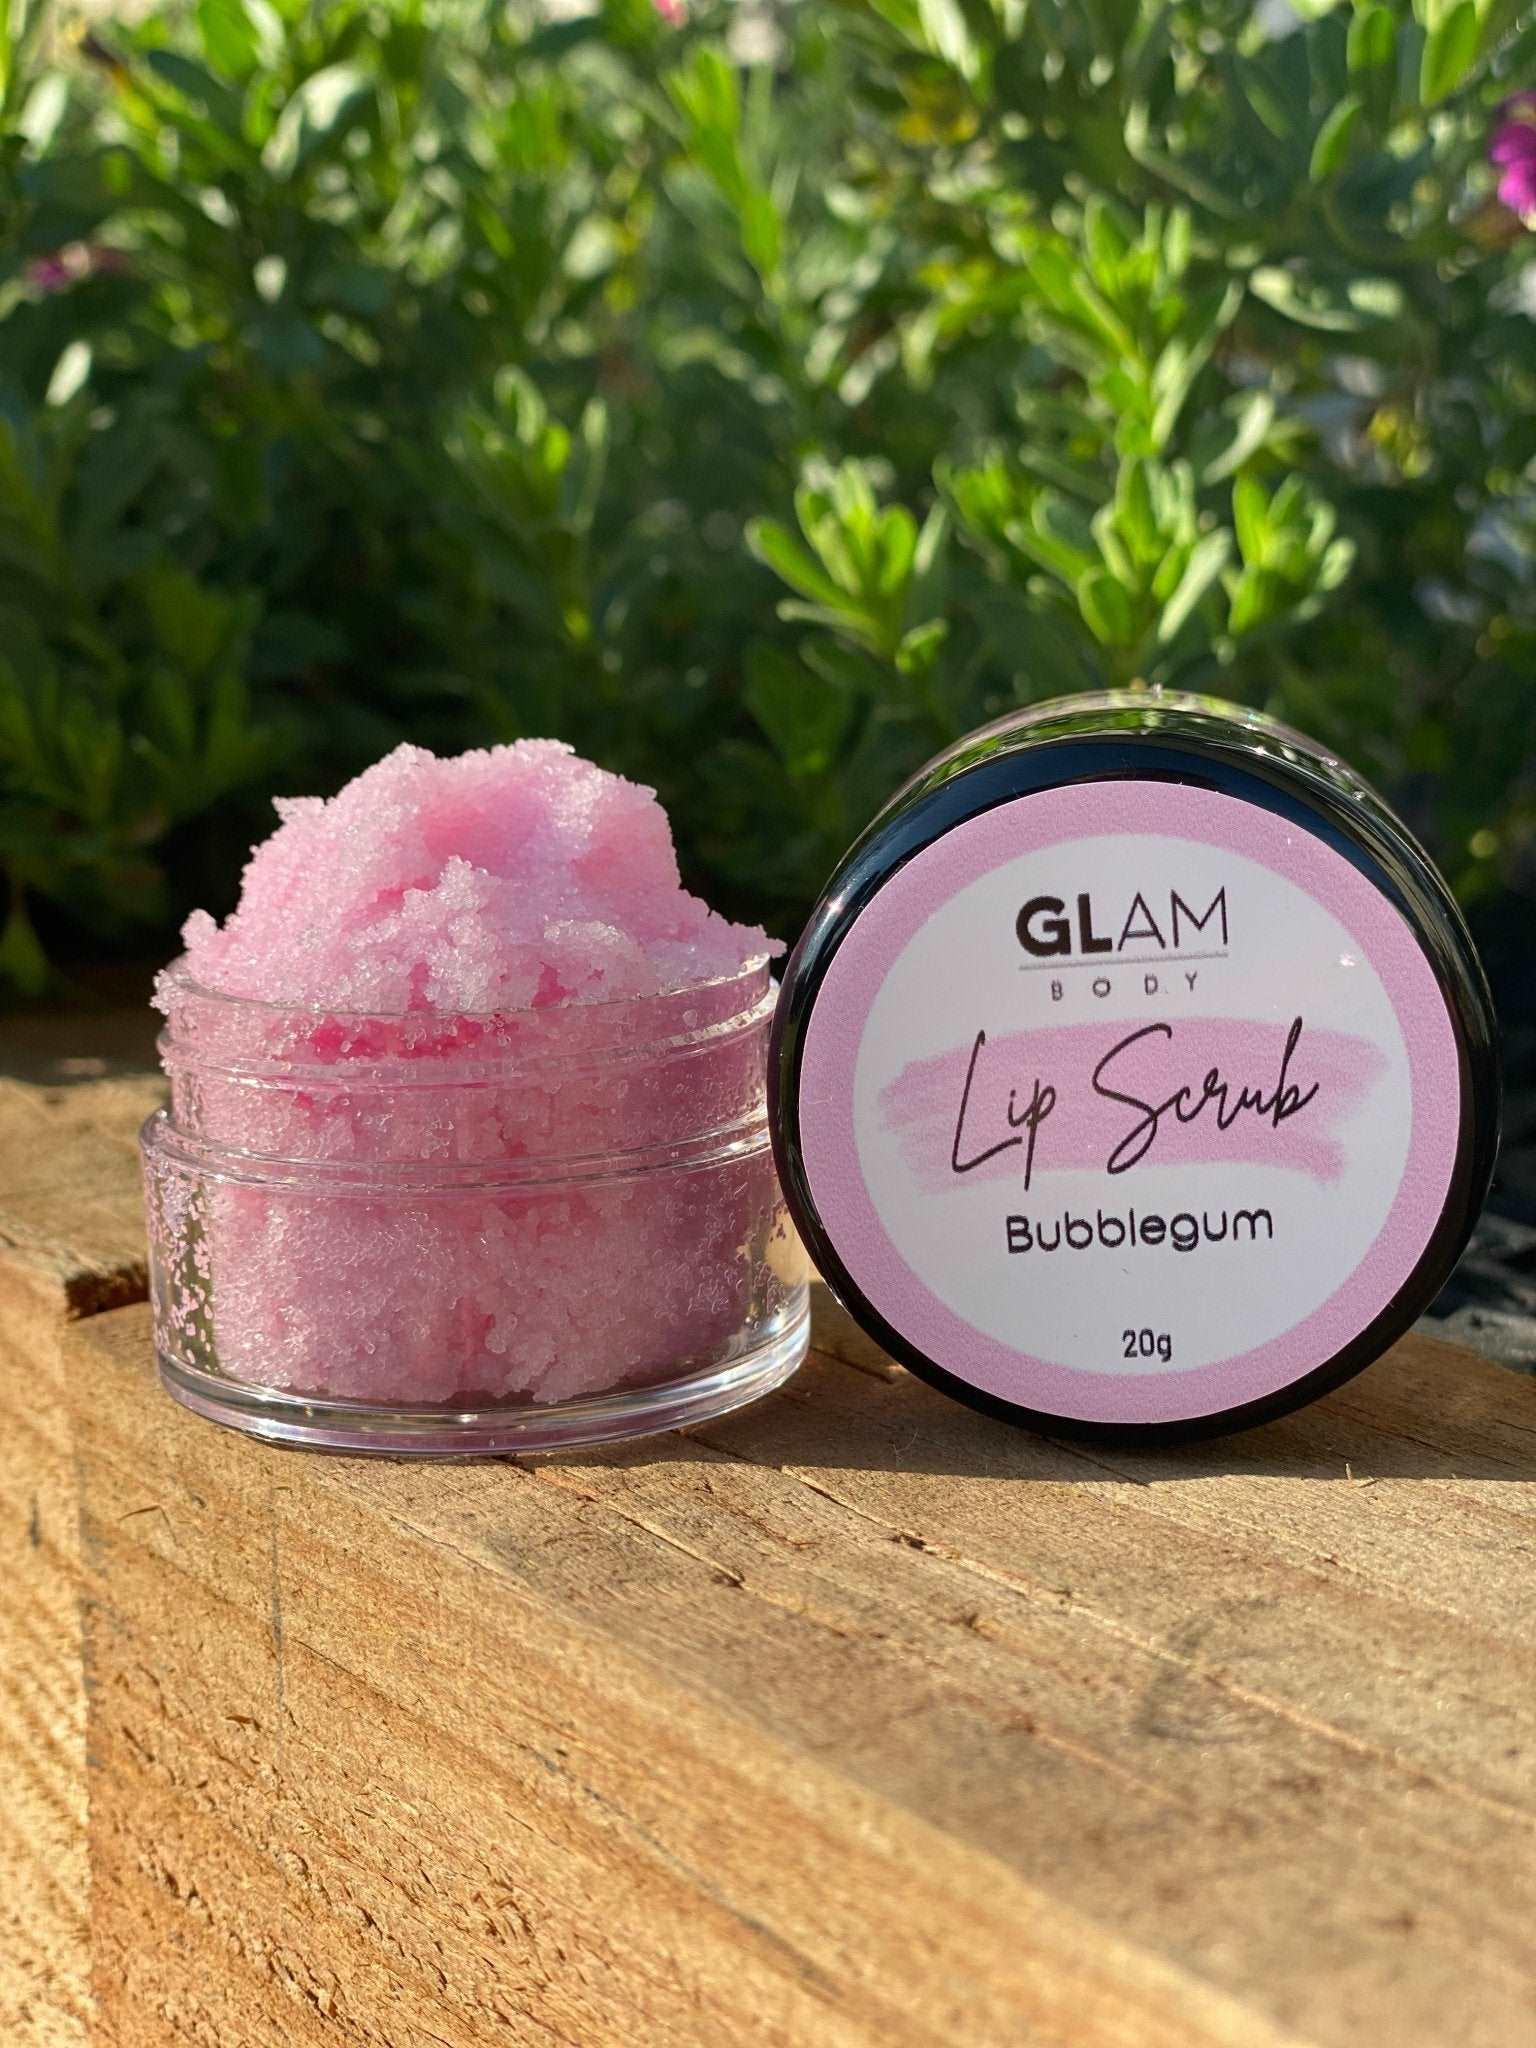 Bubblegum Lip Scrub - Glam Body